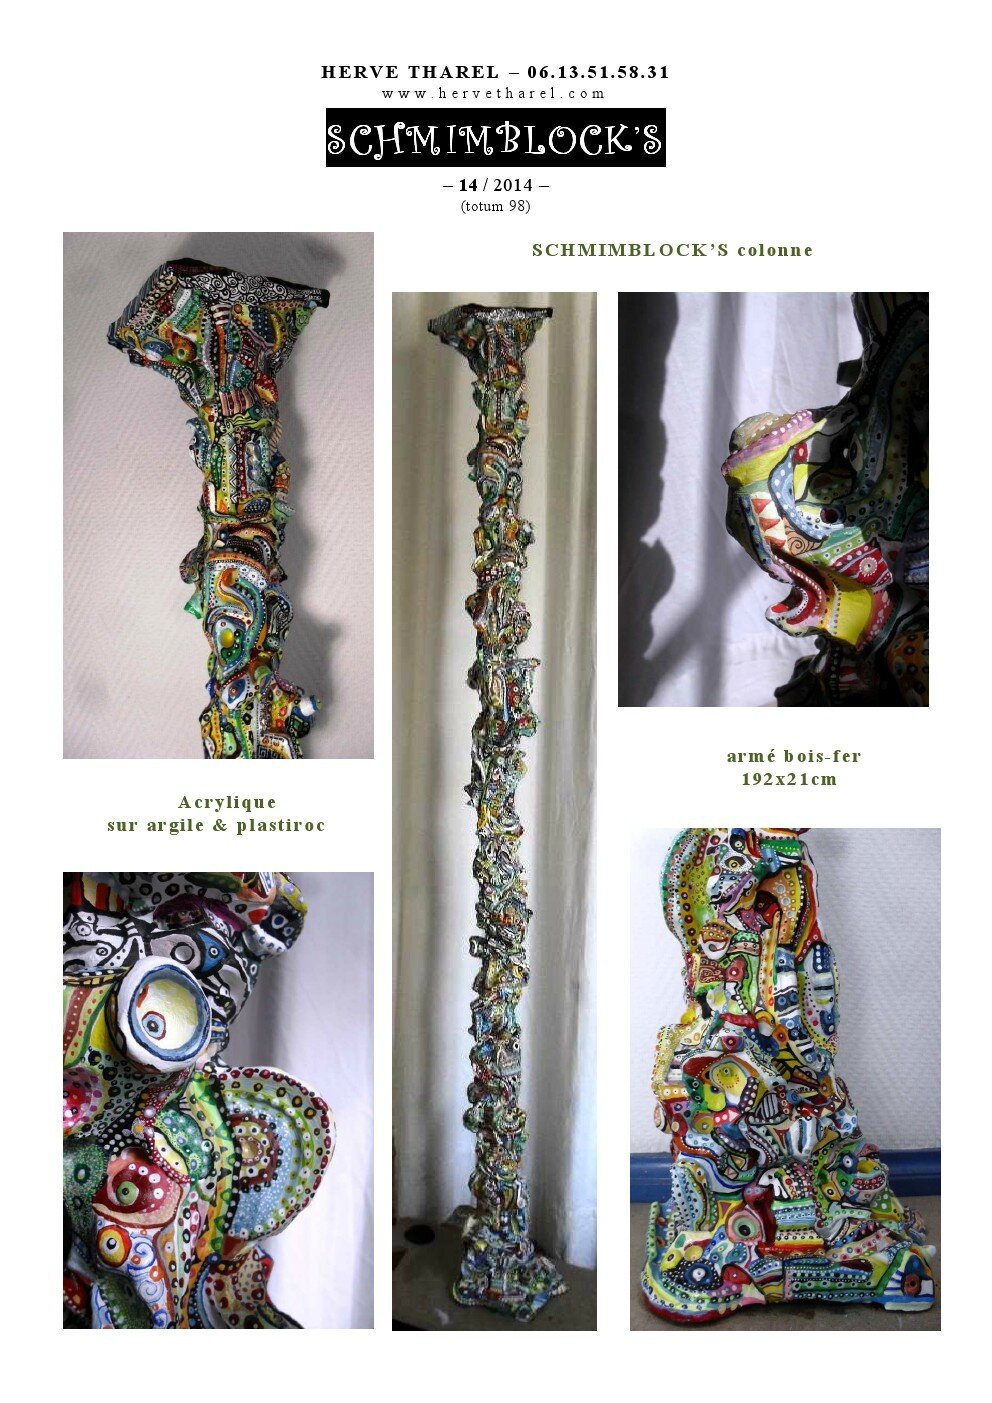 page 14 2014-TOTUM 98 SCHMIMBLOCK'S colonne acrylique sur argile-plastiroc armé bois-fer 192x21cm